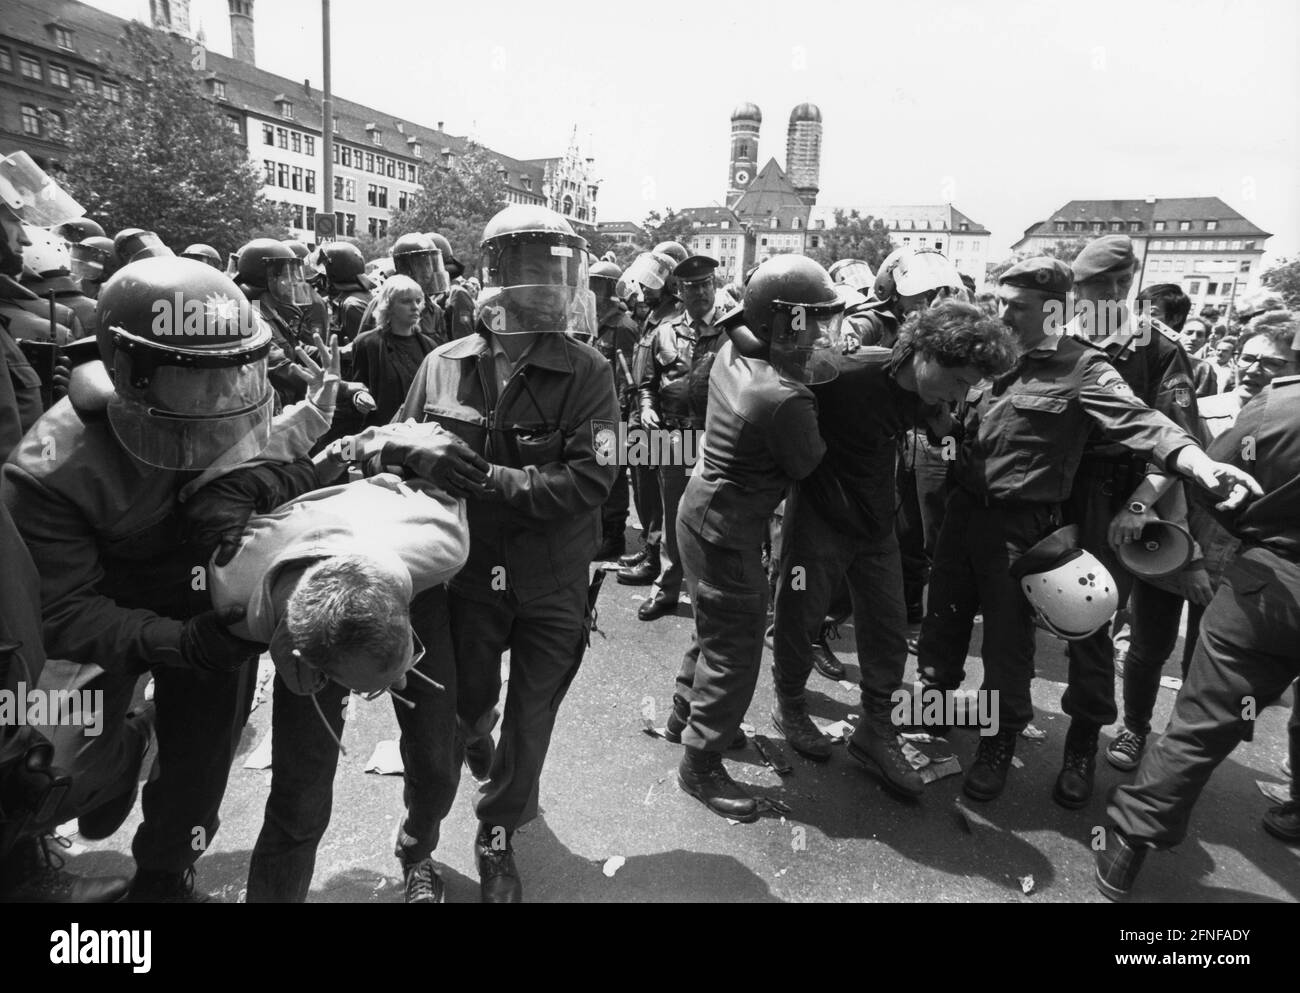 Aufnahmedatum: 06.07.1992 bayerische Polizeibeamte brechen eine nicht autorisierte Demonstration gegen den Weltwirtschaftsgipfel in München auf. Etwa 400 Menschen wurden am Morgen der Gipfeleröffnung eingekreist und zur Identifizierung behandelt. [Automatisierte Übersetzung] Stockfoto